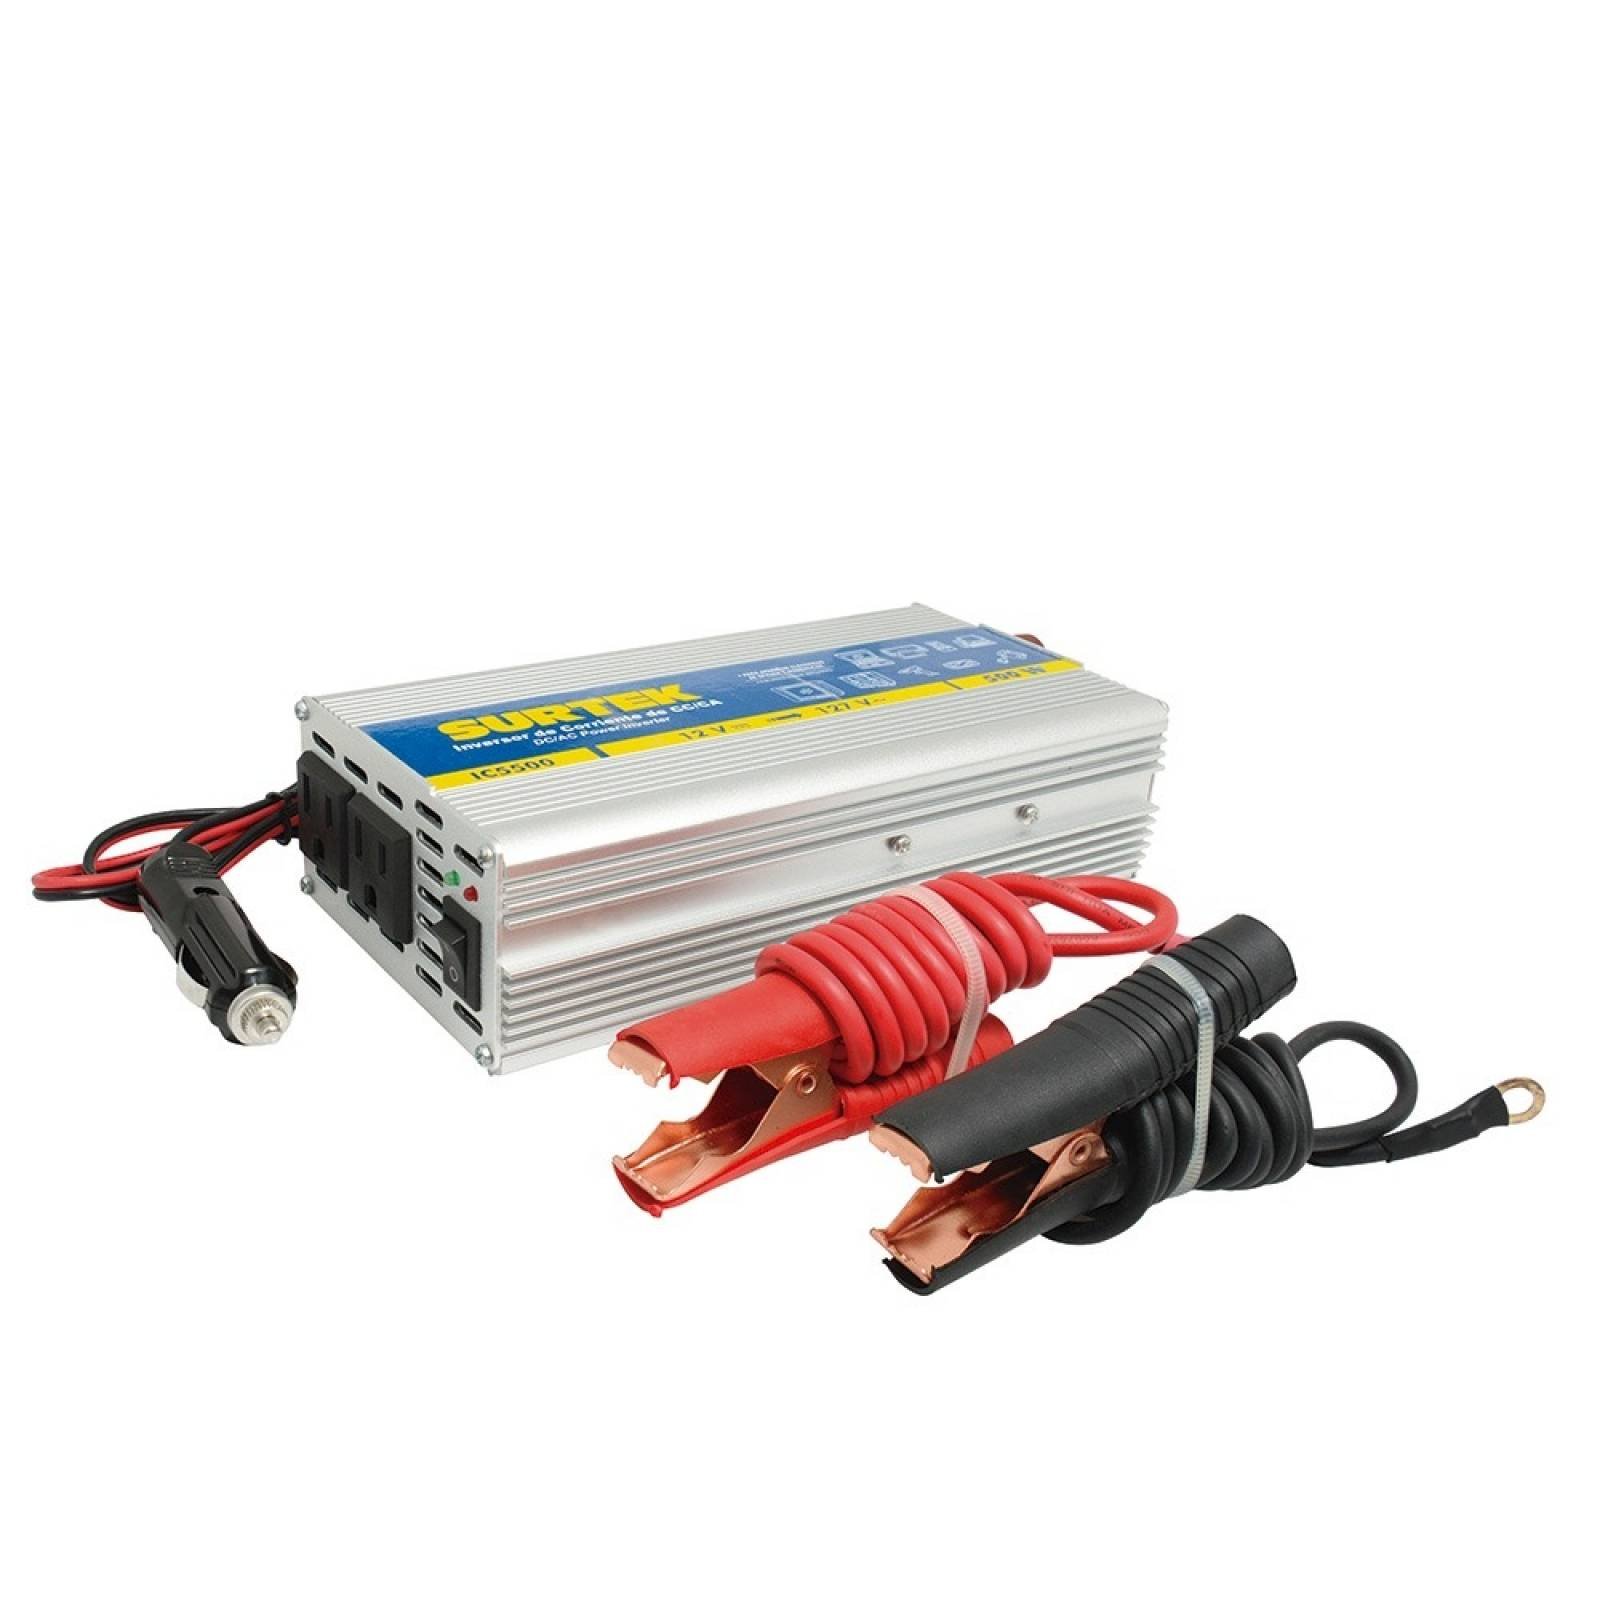 Inversor de corriente DC-AC, cables tipo caimán 500W IC5500 Surtek